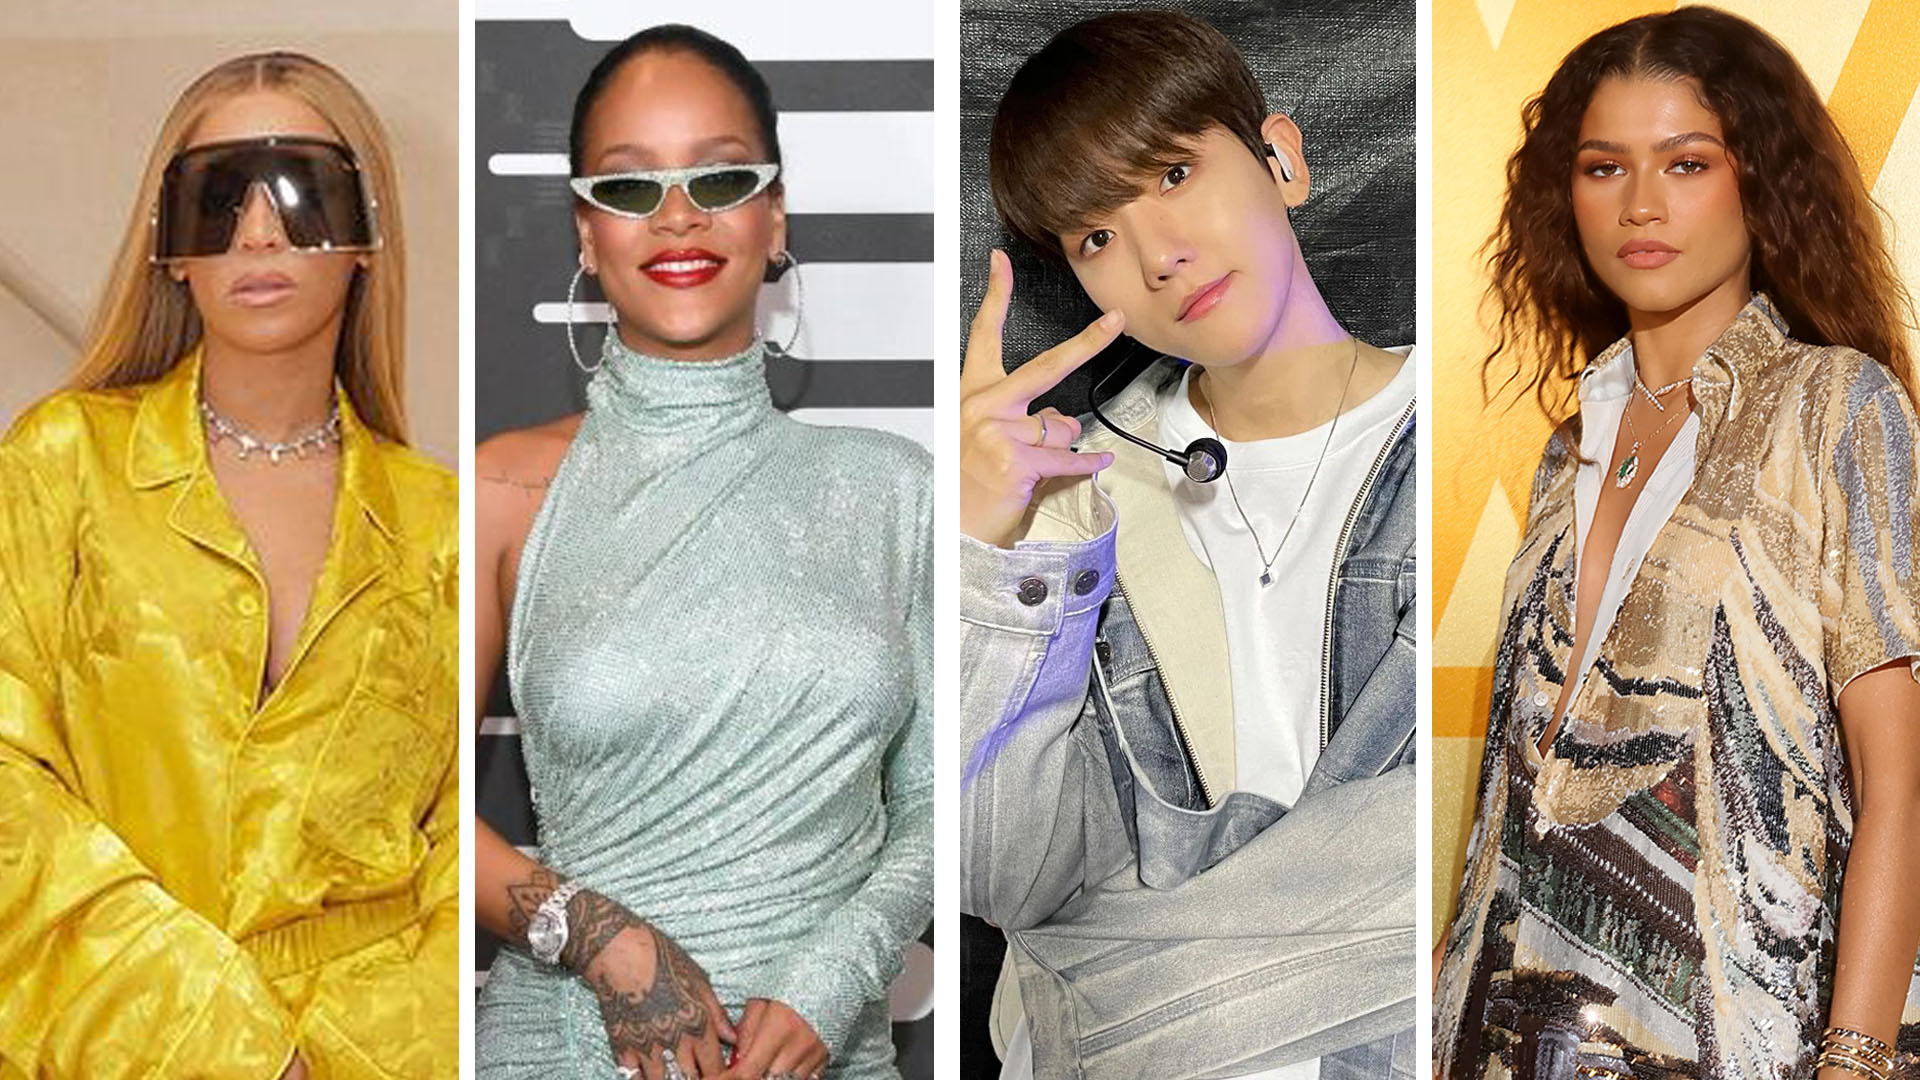 Rihanna attending the Louis Vuitton Menswear Spring Summer 2019